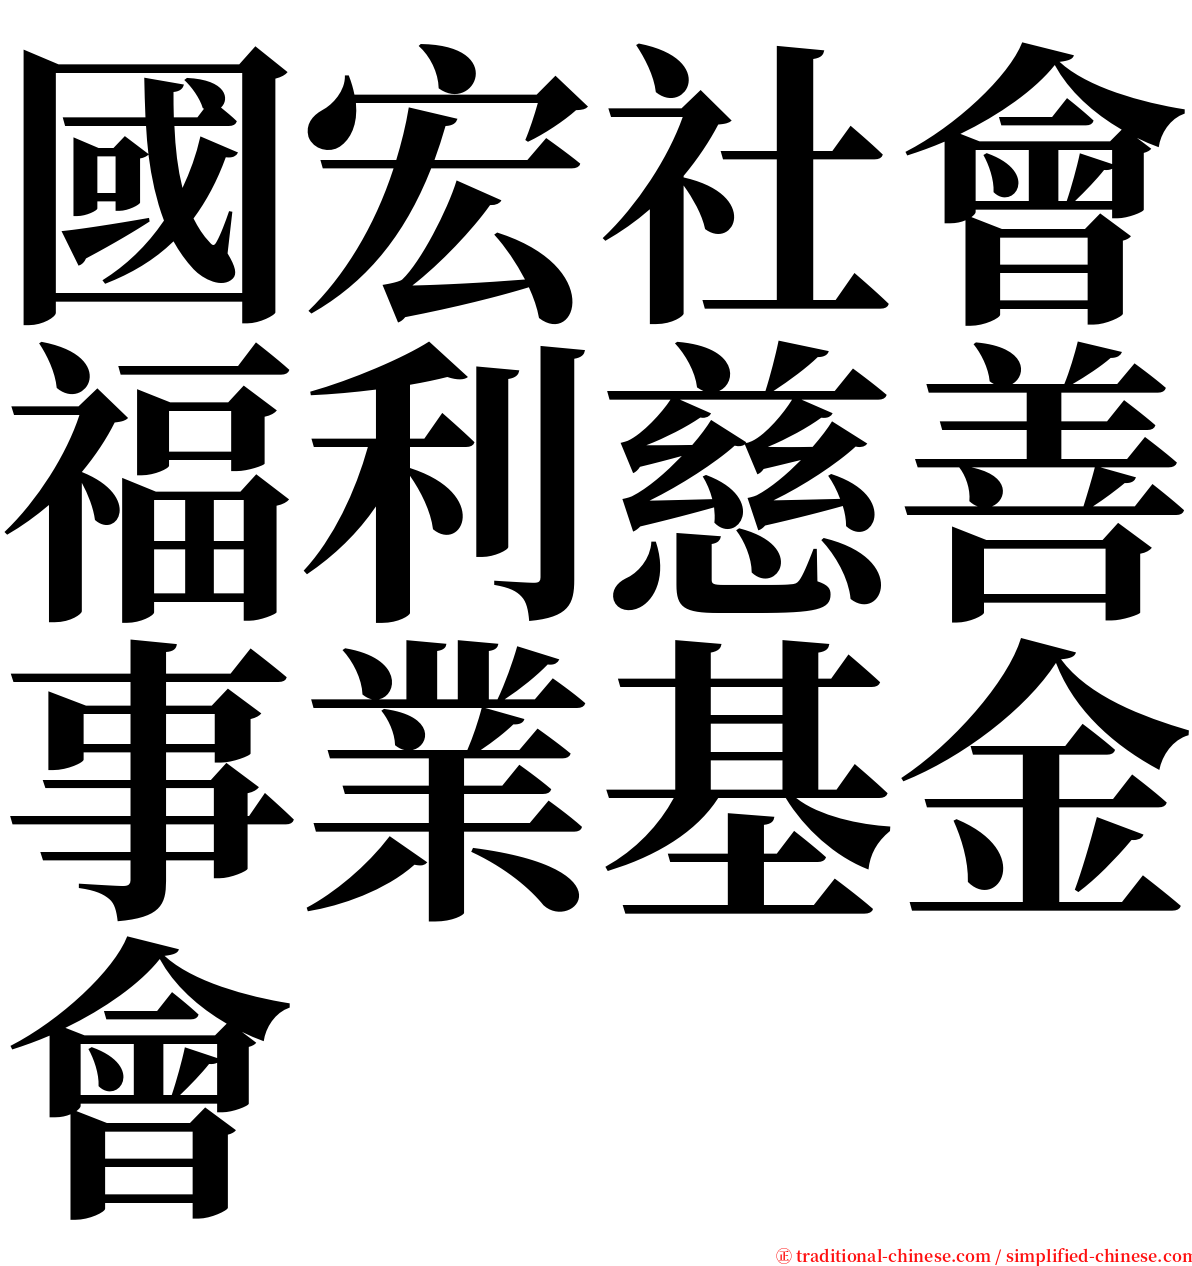 國宏社會福利慈善事業基金會 serif font